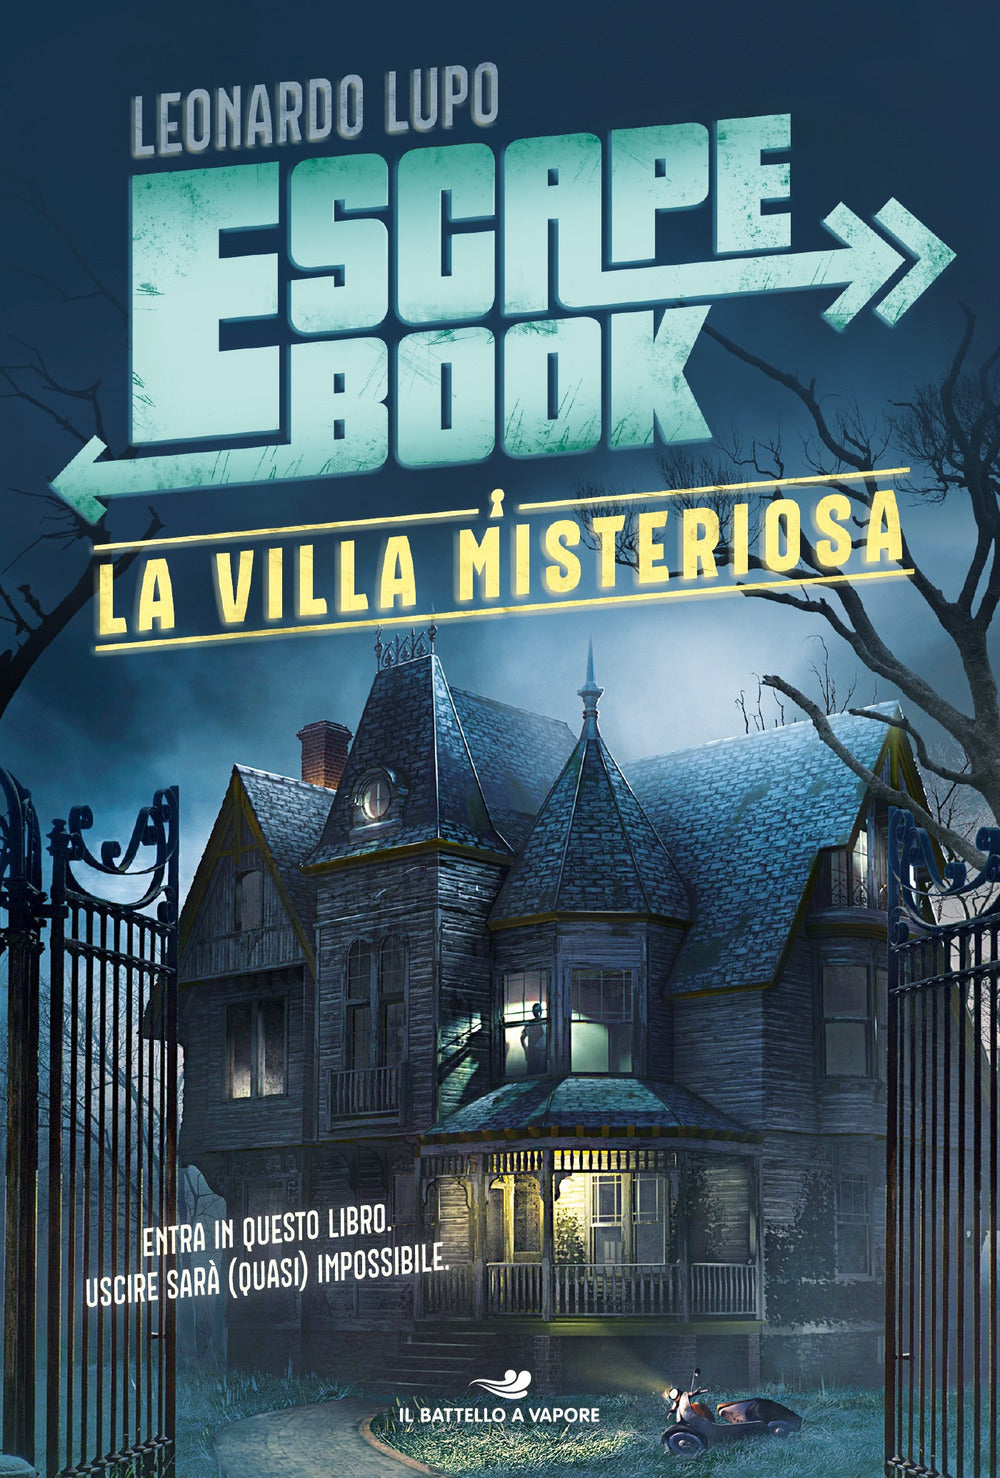 La villa misteriosa. Escape book.